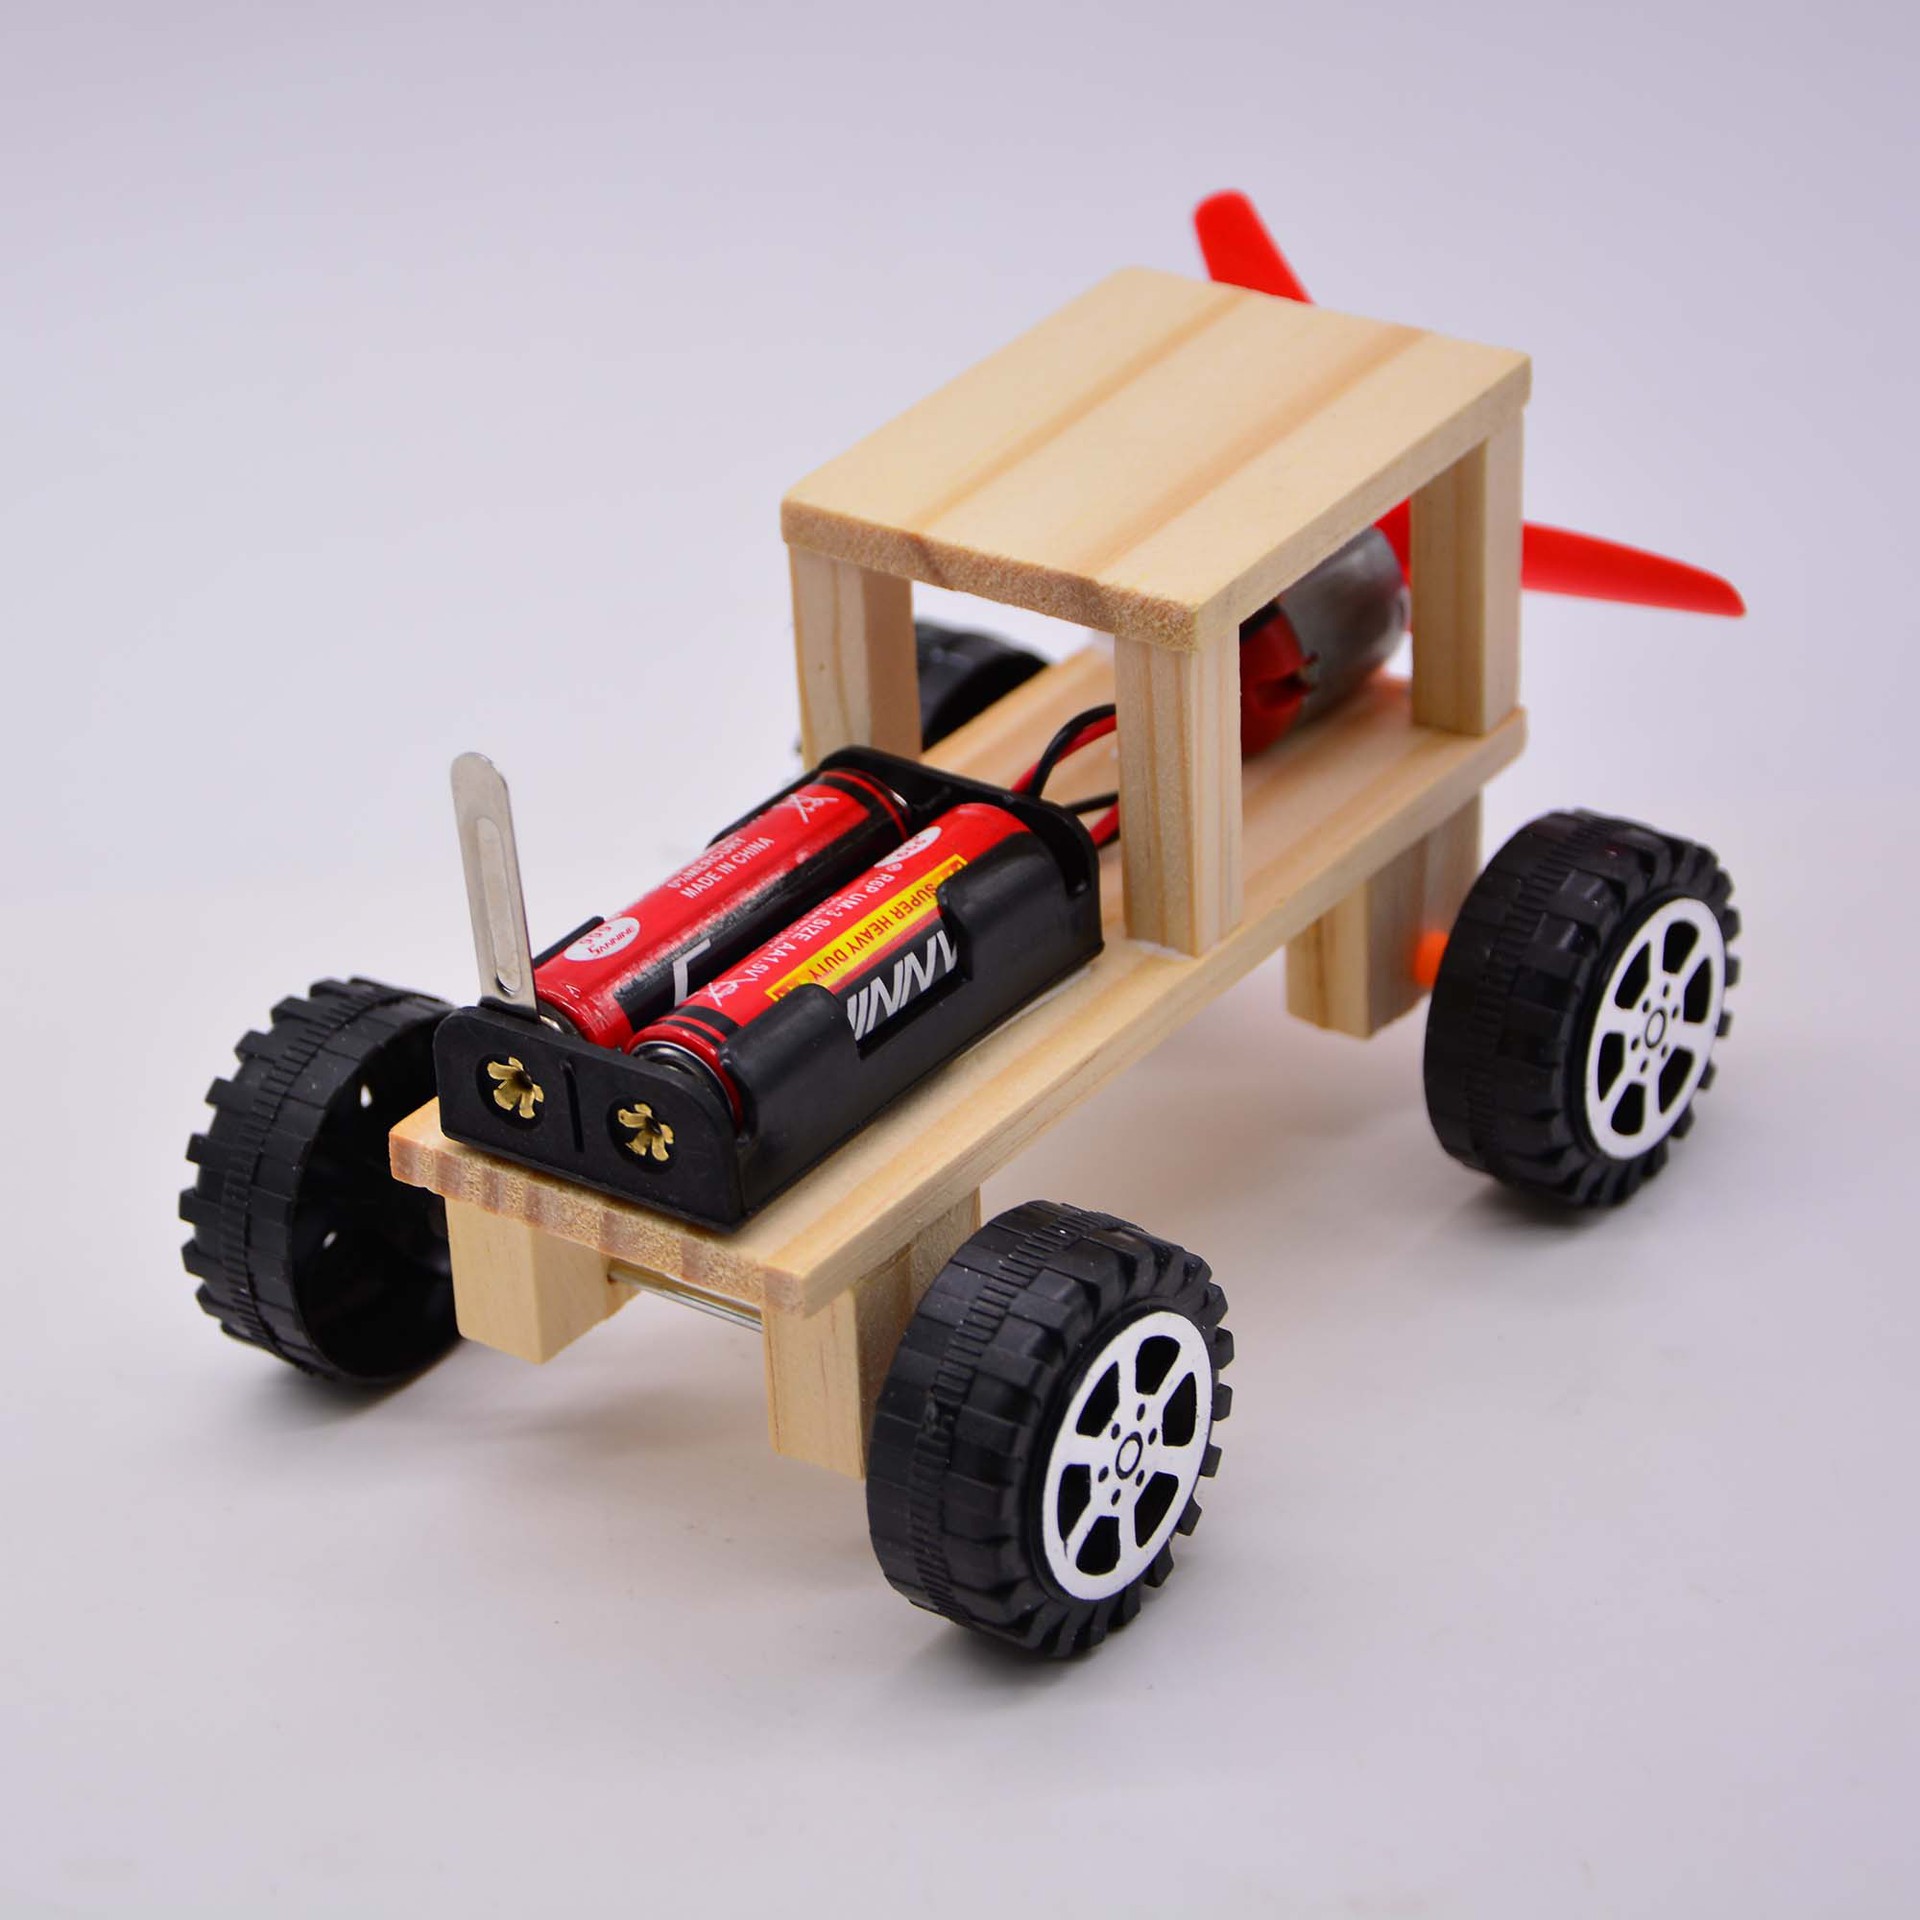 海盗4WD 多功能小车 功能介绍与展示 - DF创客社区 - 分享创造的喜悦